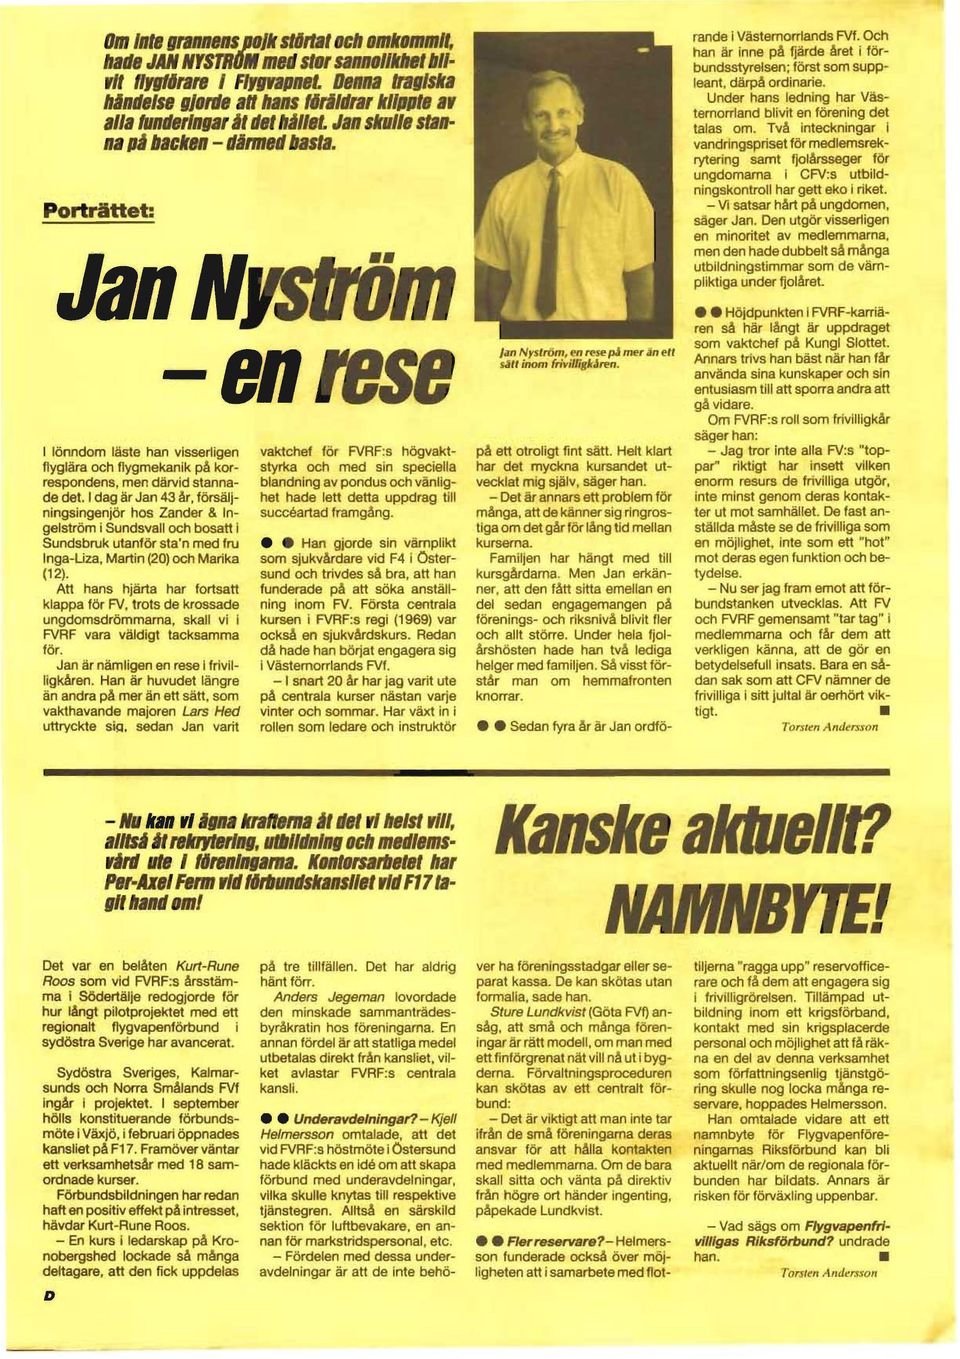 Jan Nyström I lönndom läste han visserligen flyglära och flygmekanik på korrespondens, men därvid stannade det.